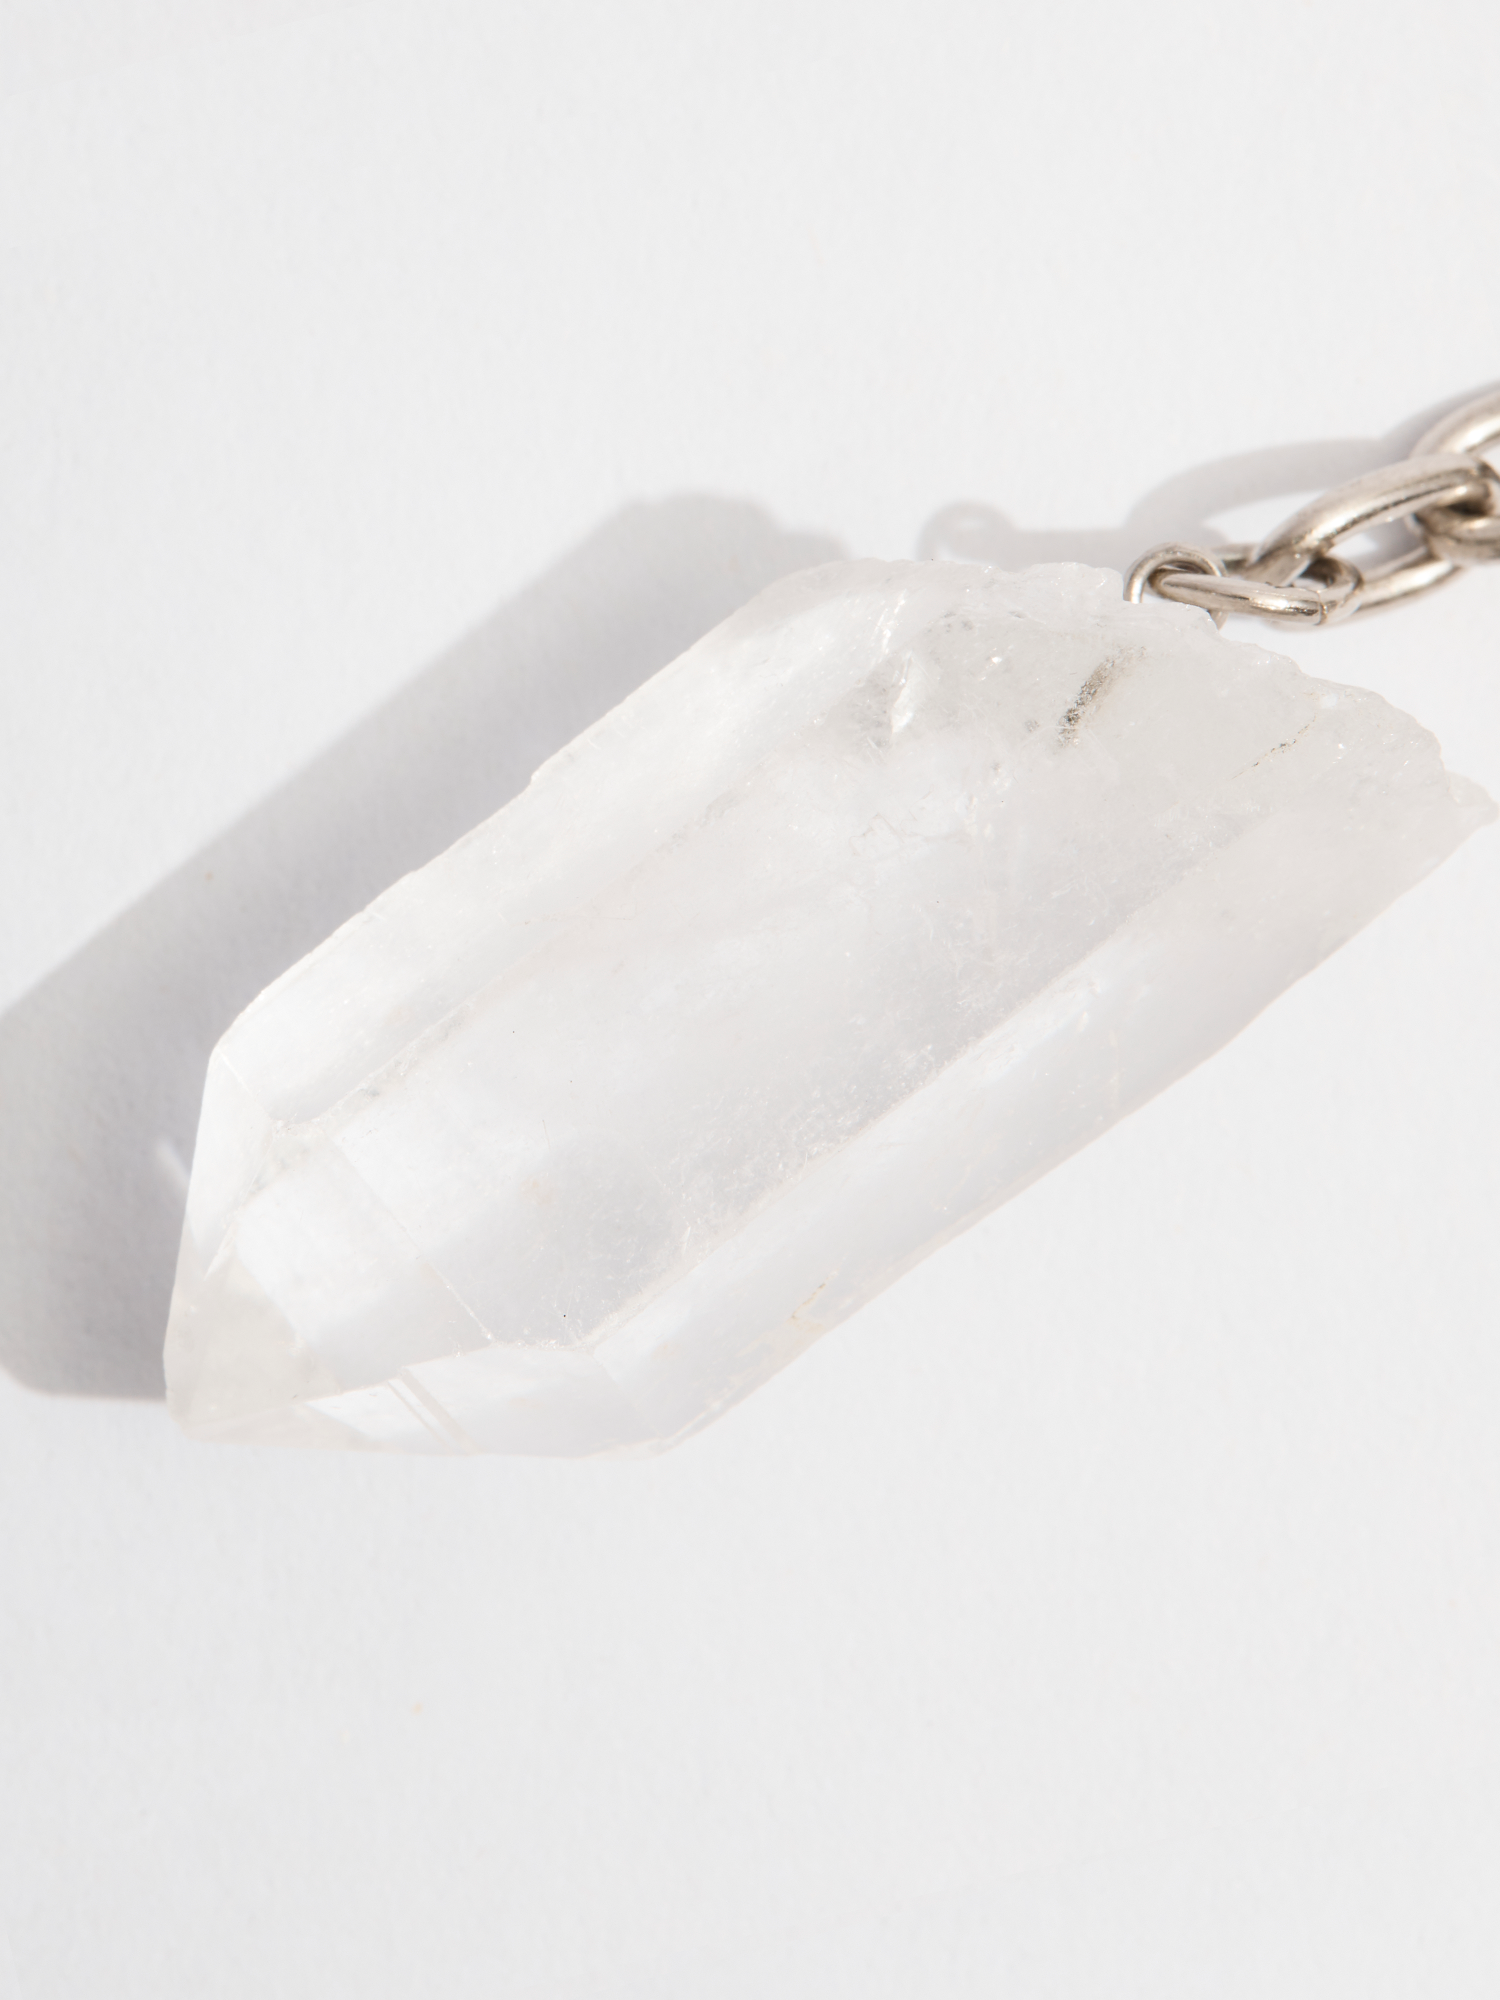 crystal keyring | clear quartz